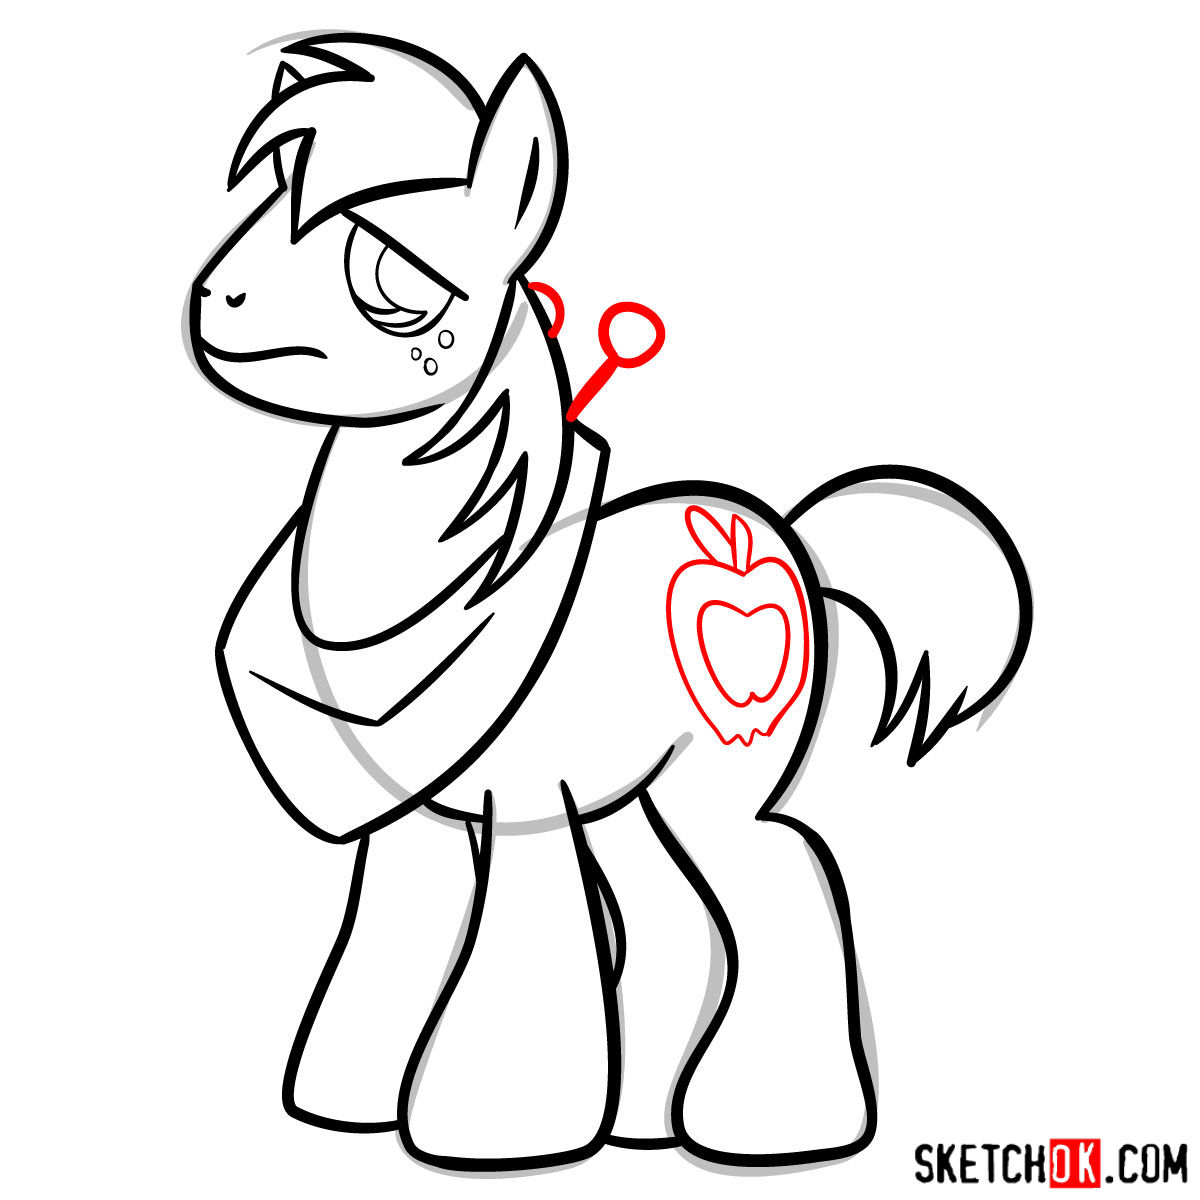 How to draw Big MacIntosh pony - step 11